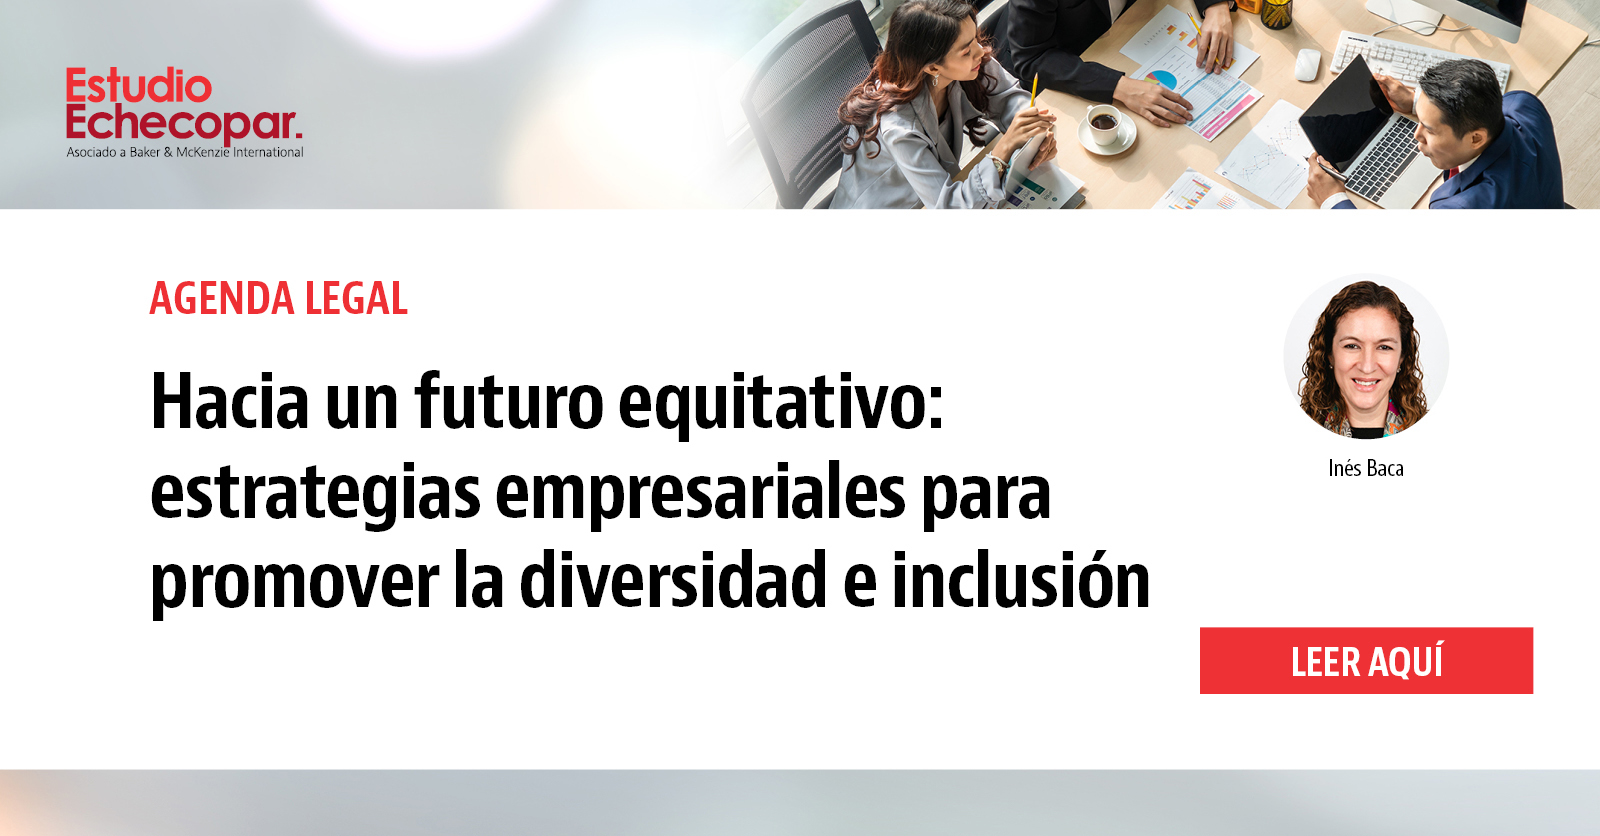 Hacia un futuro equitativo: estrategias empresariales para promover la diversidad e inclusión